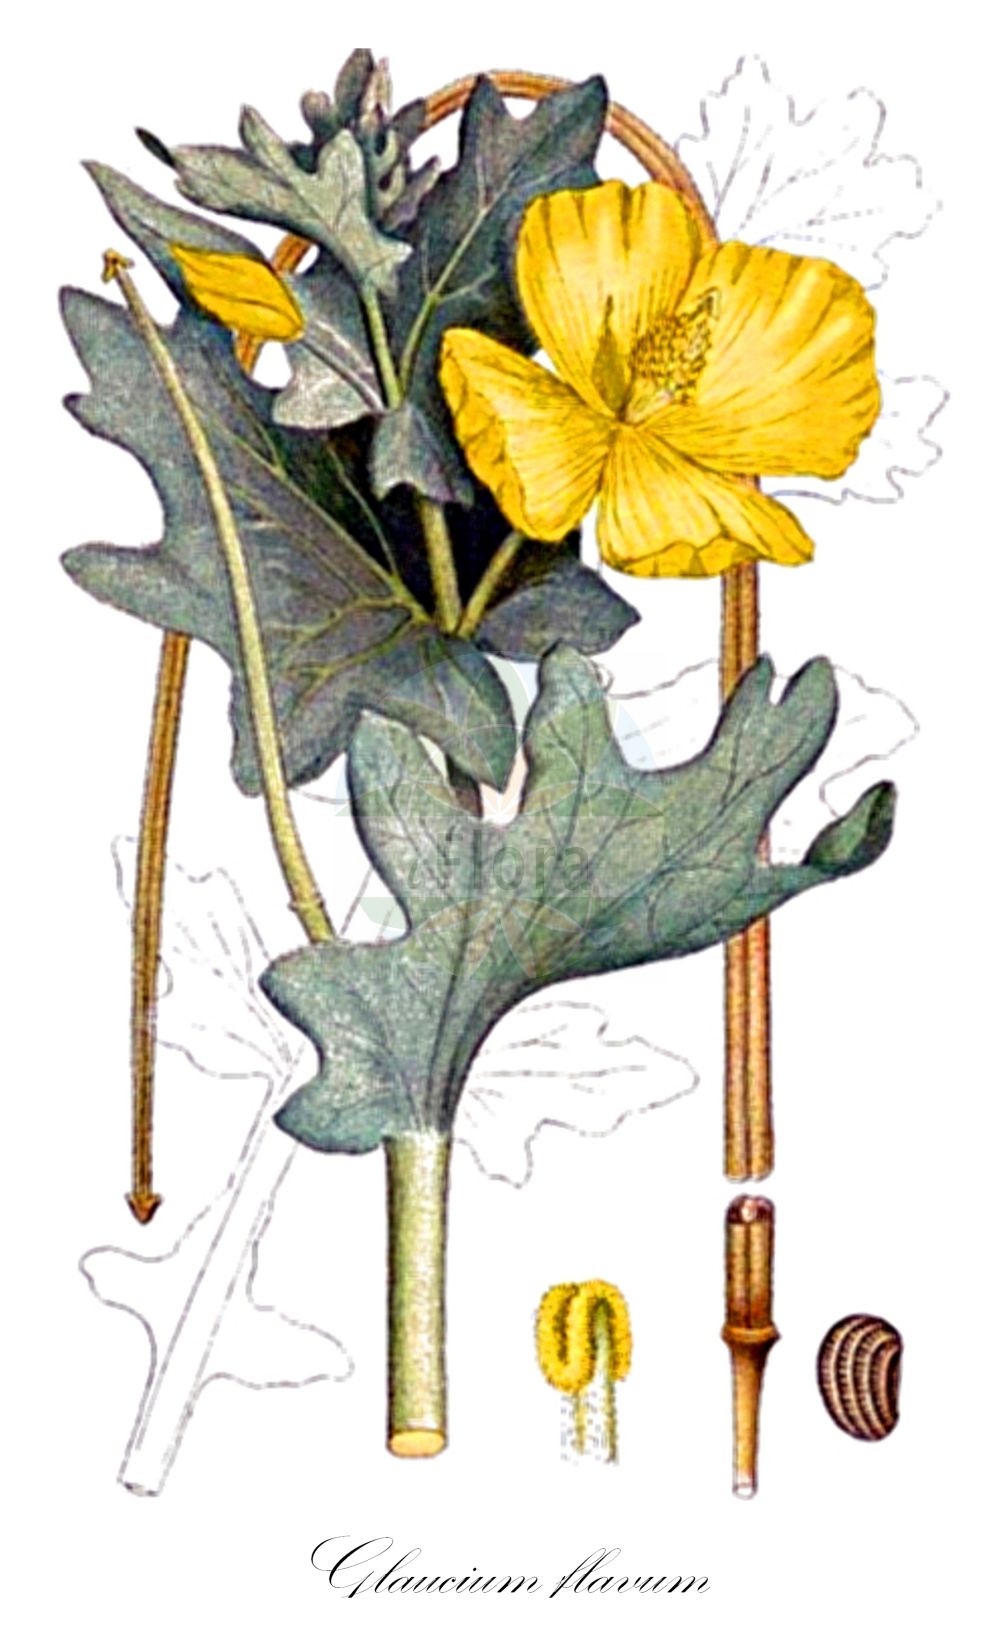 Historische Abbildung von Glaucium flavum (Gelber Hornmohn - Yellow Horned-poppy). Das Bild zeigt Blatt, Bluete, Frucht und Same. ---- Historical Drawing of Glaucium flavum (Gelber Hornmohn - Yellow Horned-poppy). The image is showing leaf, flower, fruit and seed.(Glaucium flavum,Gelber Hornmohn,Yellow Horned-poppy,Glaucium flavum,Glaucium fulvum,Glaucium luteum,Glaucium serpieri,Gelber Hornmohn,Yellow Horned-poppy,Yellow Hornpoppy,Glaucium,Hornmohn,Hornpoppy,Papaveraceae,Mohngewächse,Poppy family,Blatt,Bluete,Frucht,Same,leaf,flower,fruit,seed,Lindman (1901-1905))